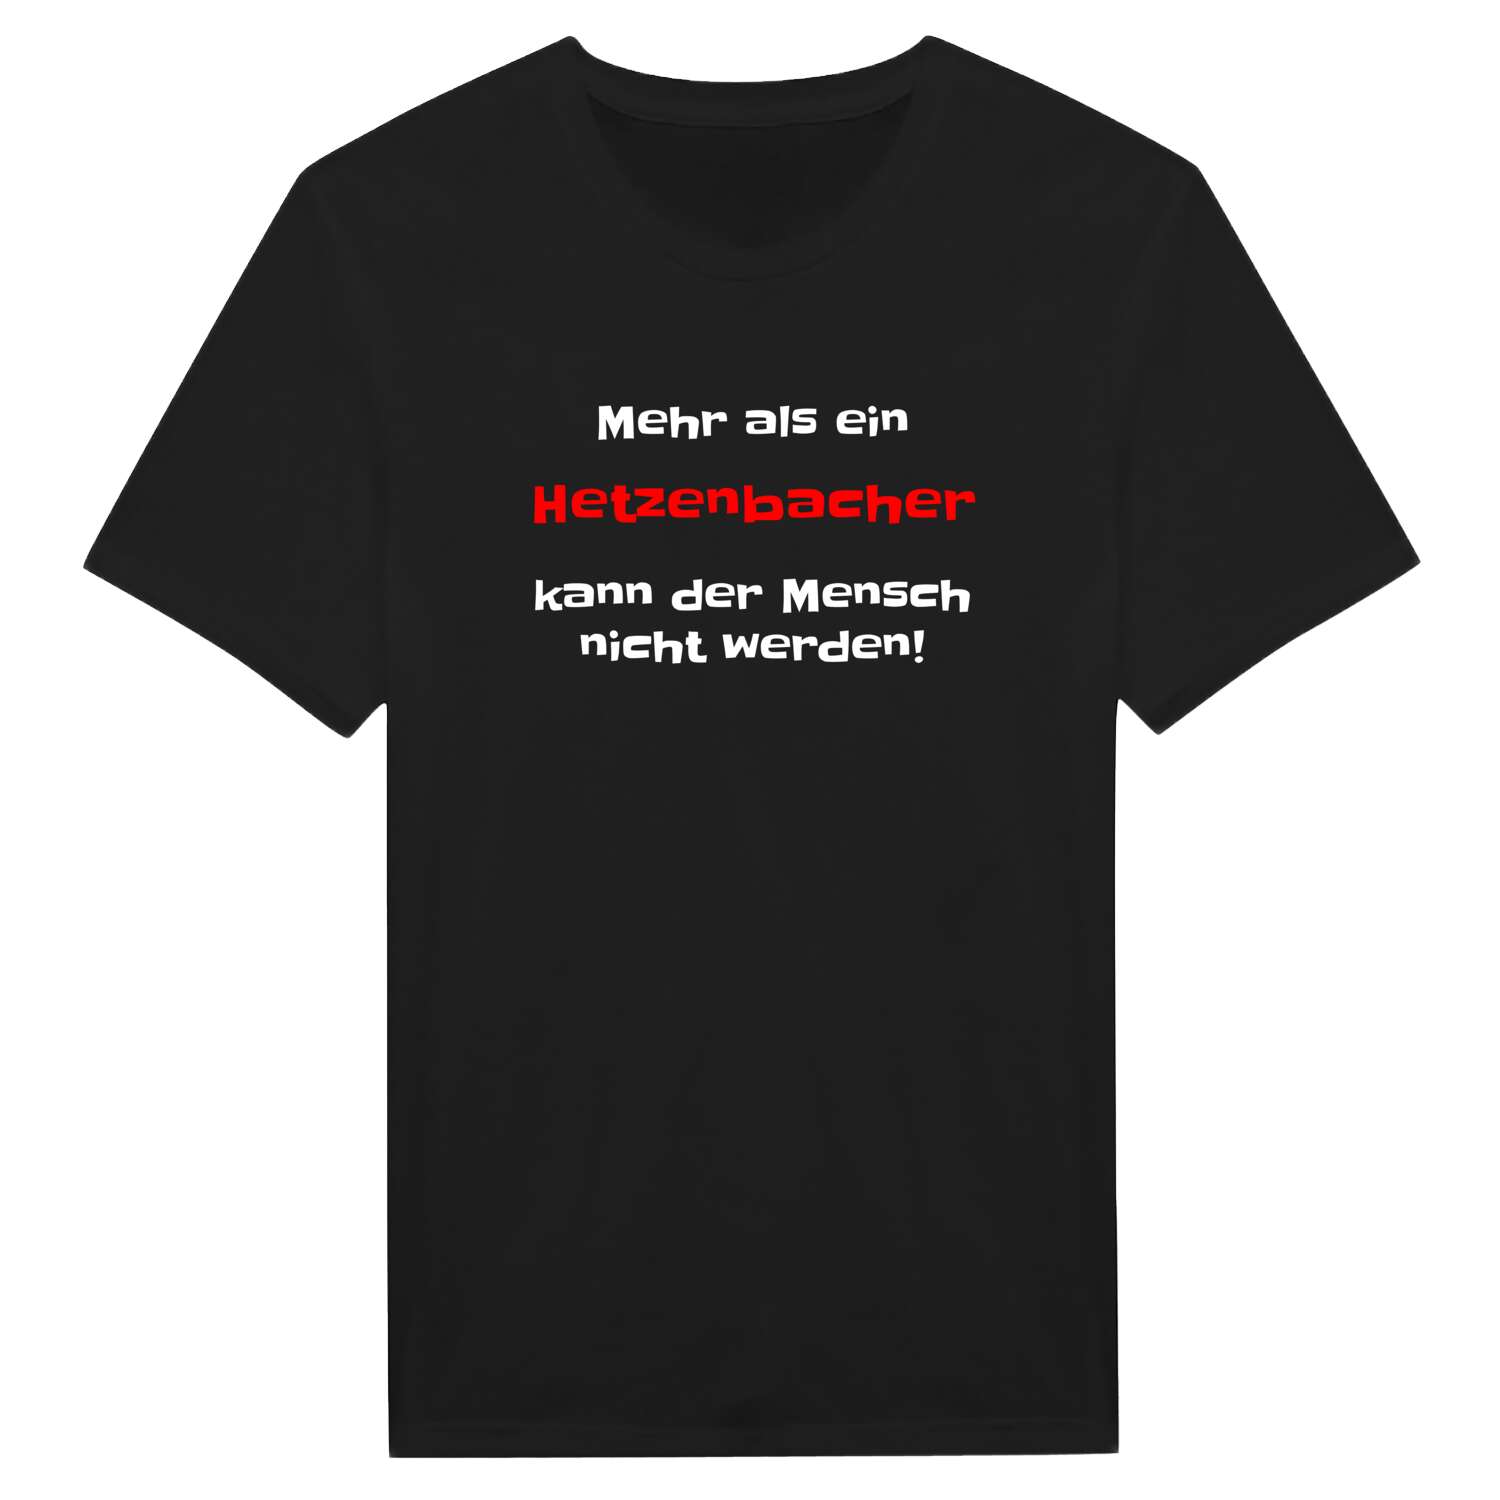 Hetzenbach T-Shirt »Mehr als ein«